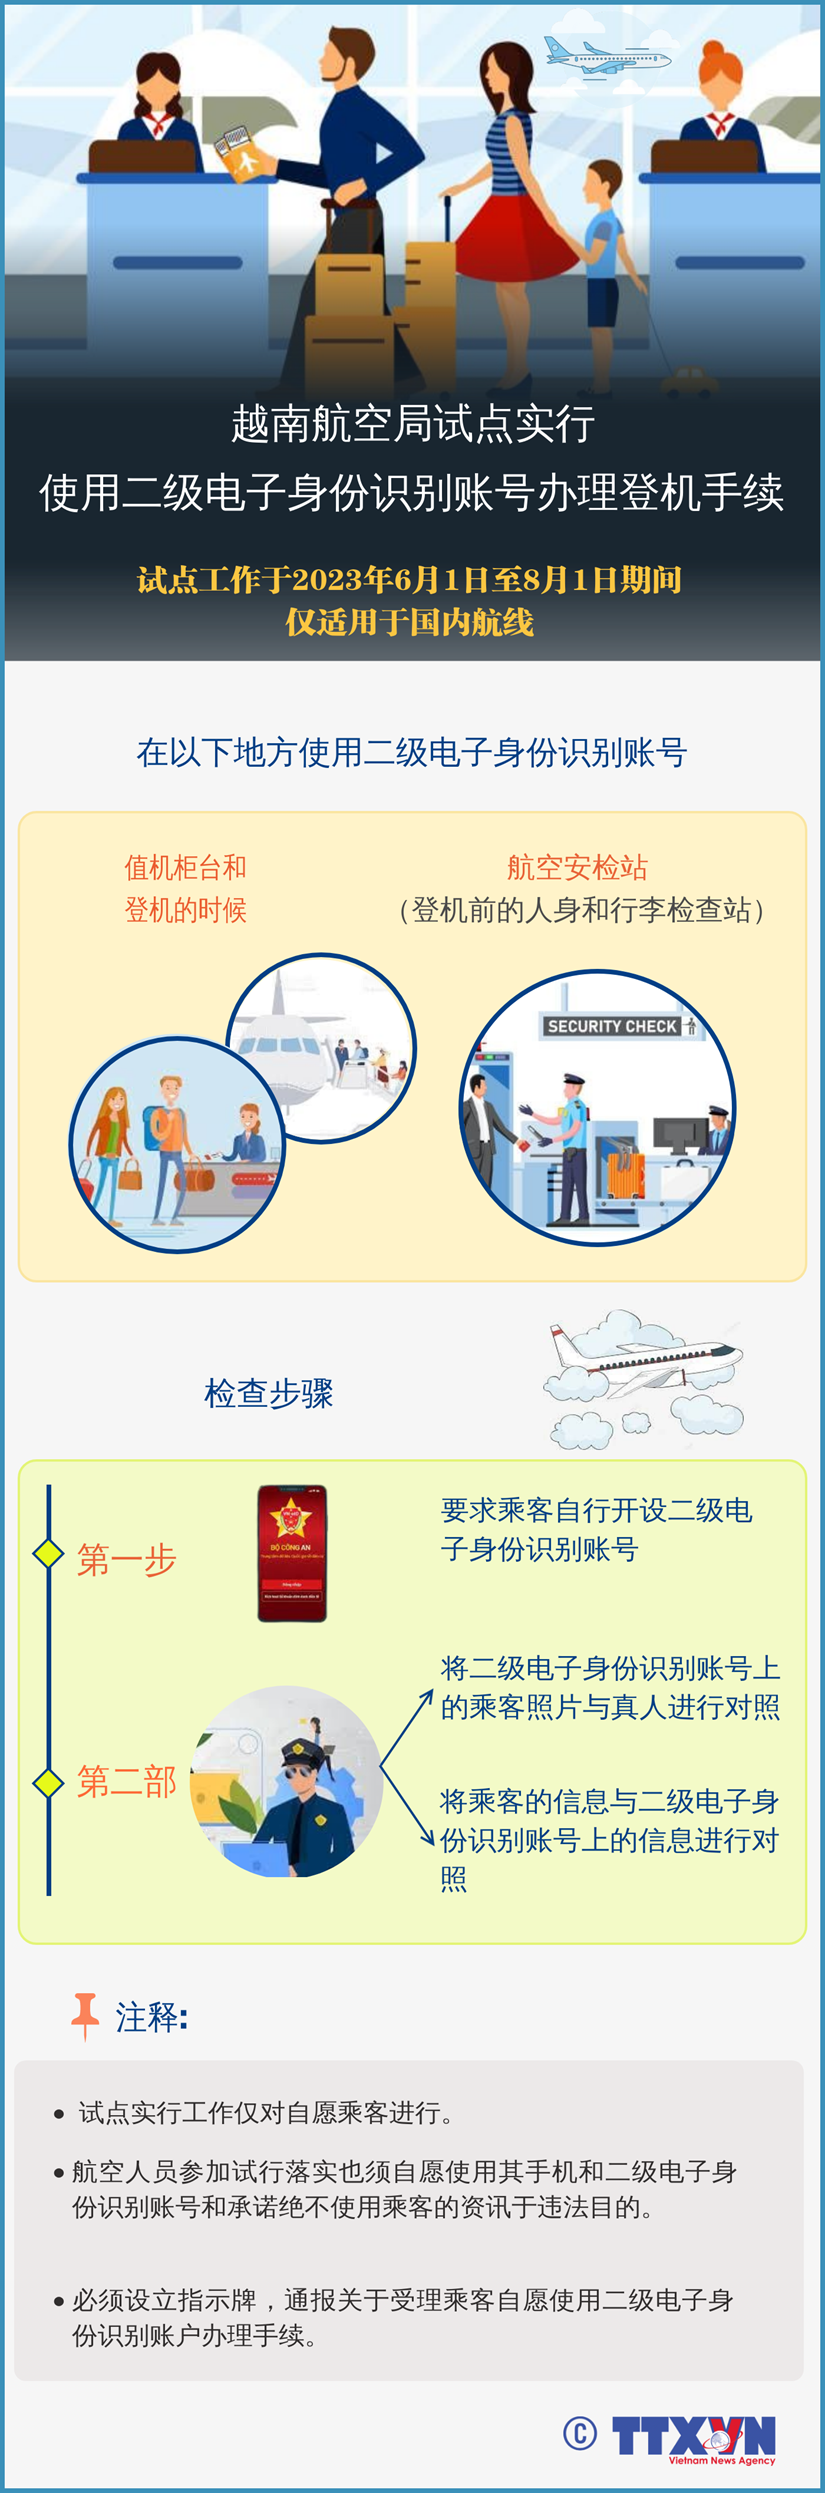 图表新闻：越南航空局试点实行使用二级电子身份识别账号办理登记手续 hinh anh 1